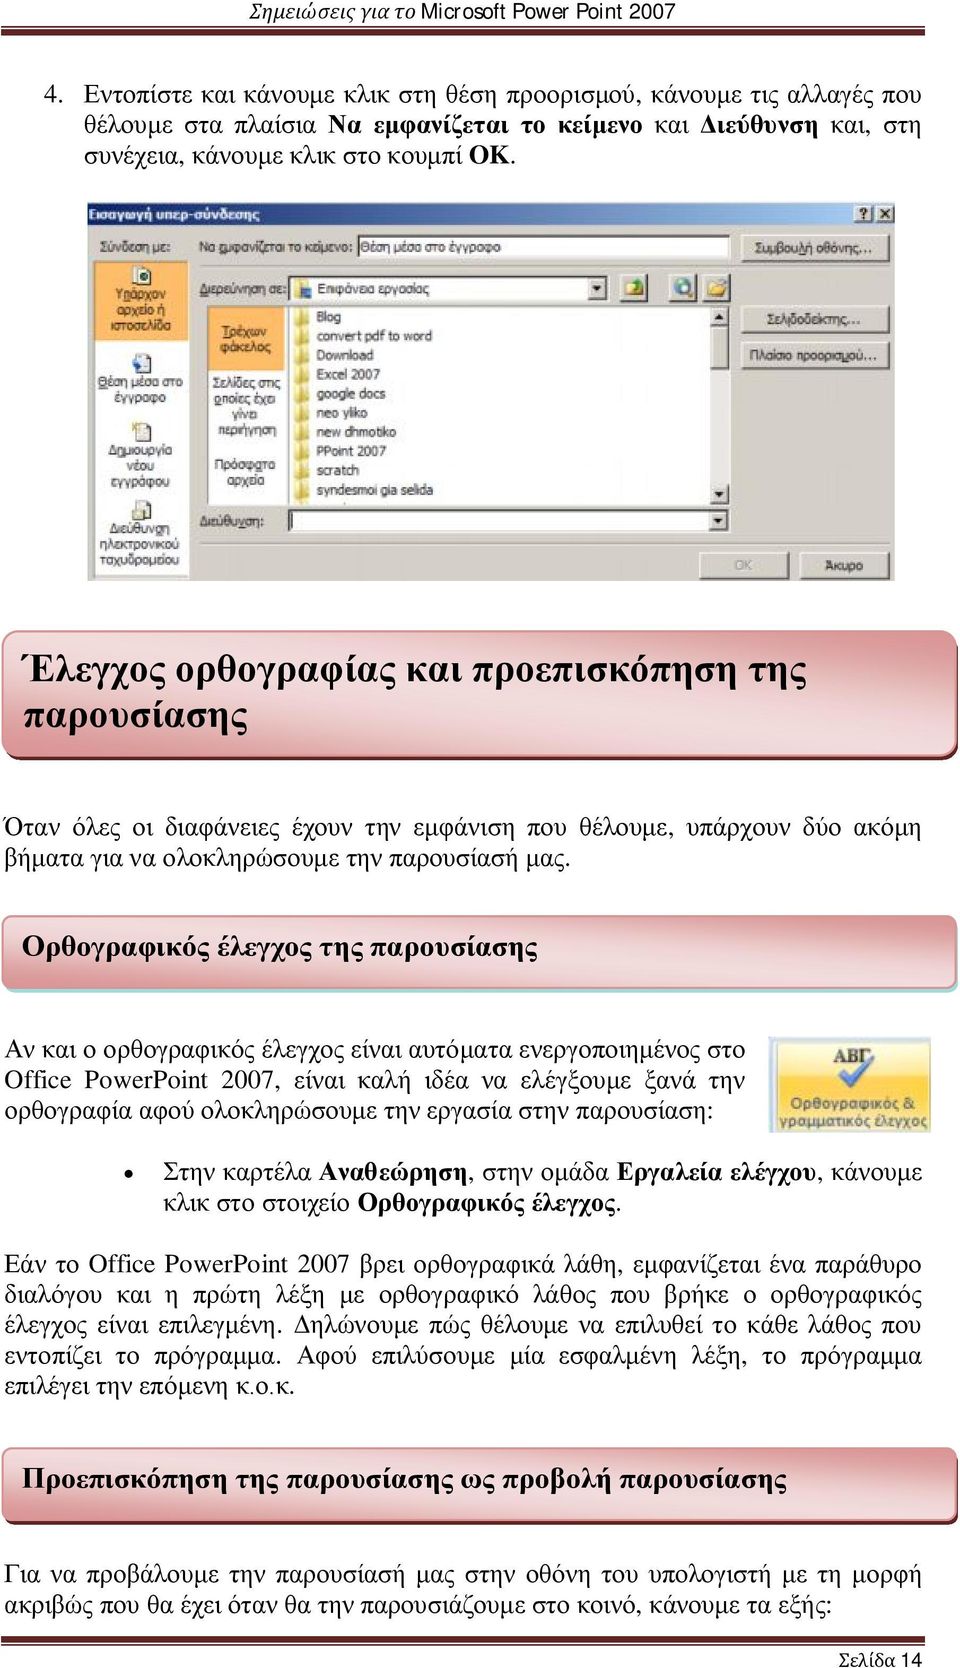 Ορθογραφικός έλεγχος της παρουσίασης Αν και ο ορθογραφικός έλεγχος είναι αυτόματα ενεργοποιημένος στο Office PowerPoint 2007, είναι καλή ιδέα να ελέγξουμε ξανά την ορθογραφία αφού ολοκληρώσουμε την